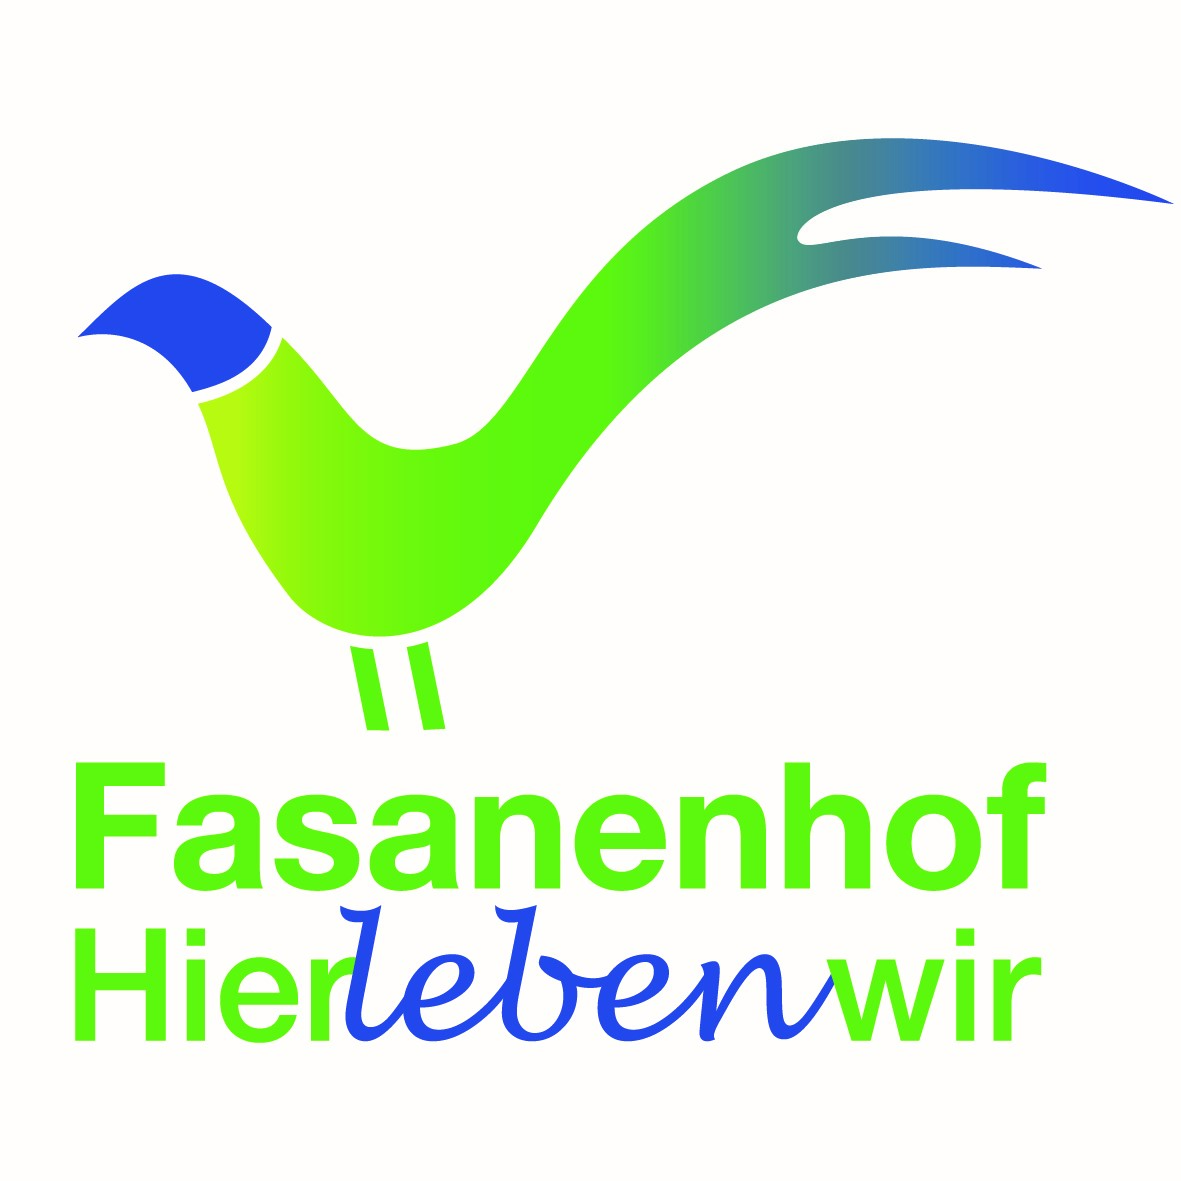 Fasanenhof-hierlebenwir